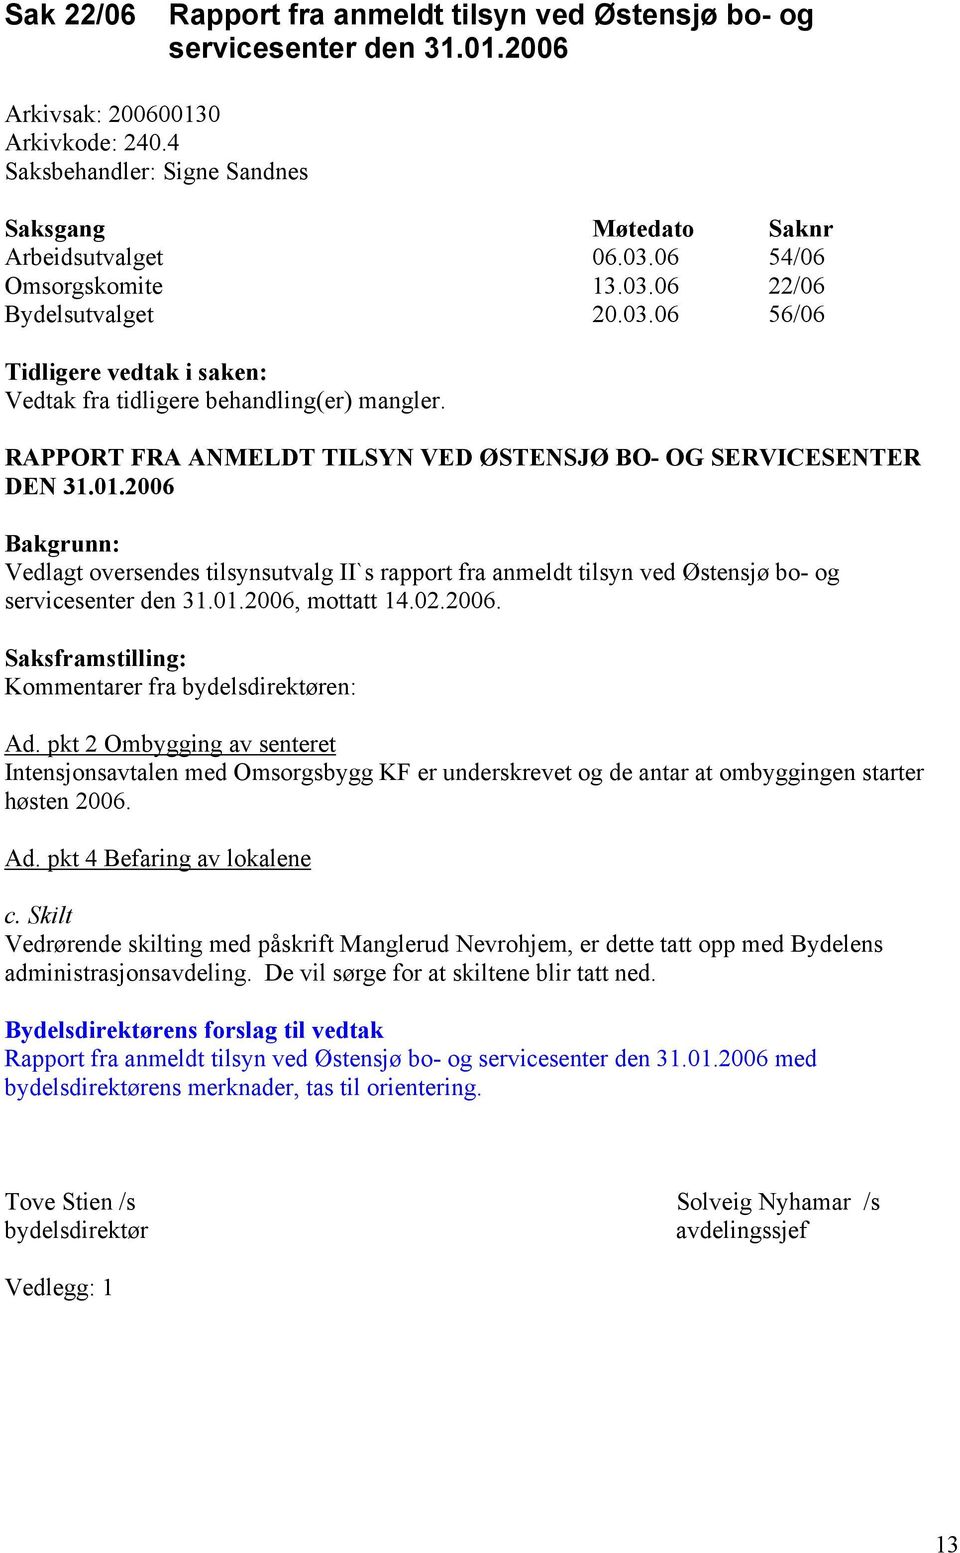 2006 Bakgrunn: Vedlagt oversendes tilsynsutvalg II`s rapport fra anmeldt tilsyn ved Østensjø bo- og servicesenter den 31.01.2006, mottatt 14.02.2006. Kommentarer fra bydelsdirektøren: Ad.